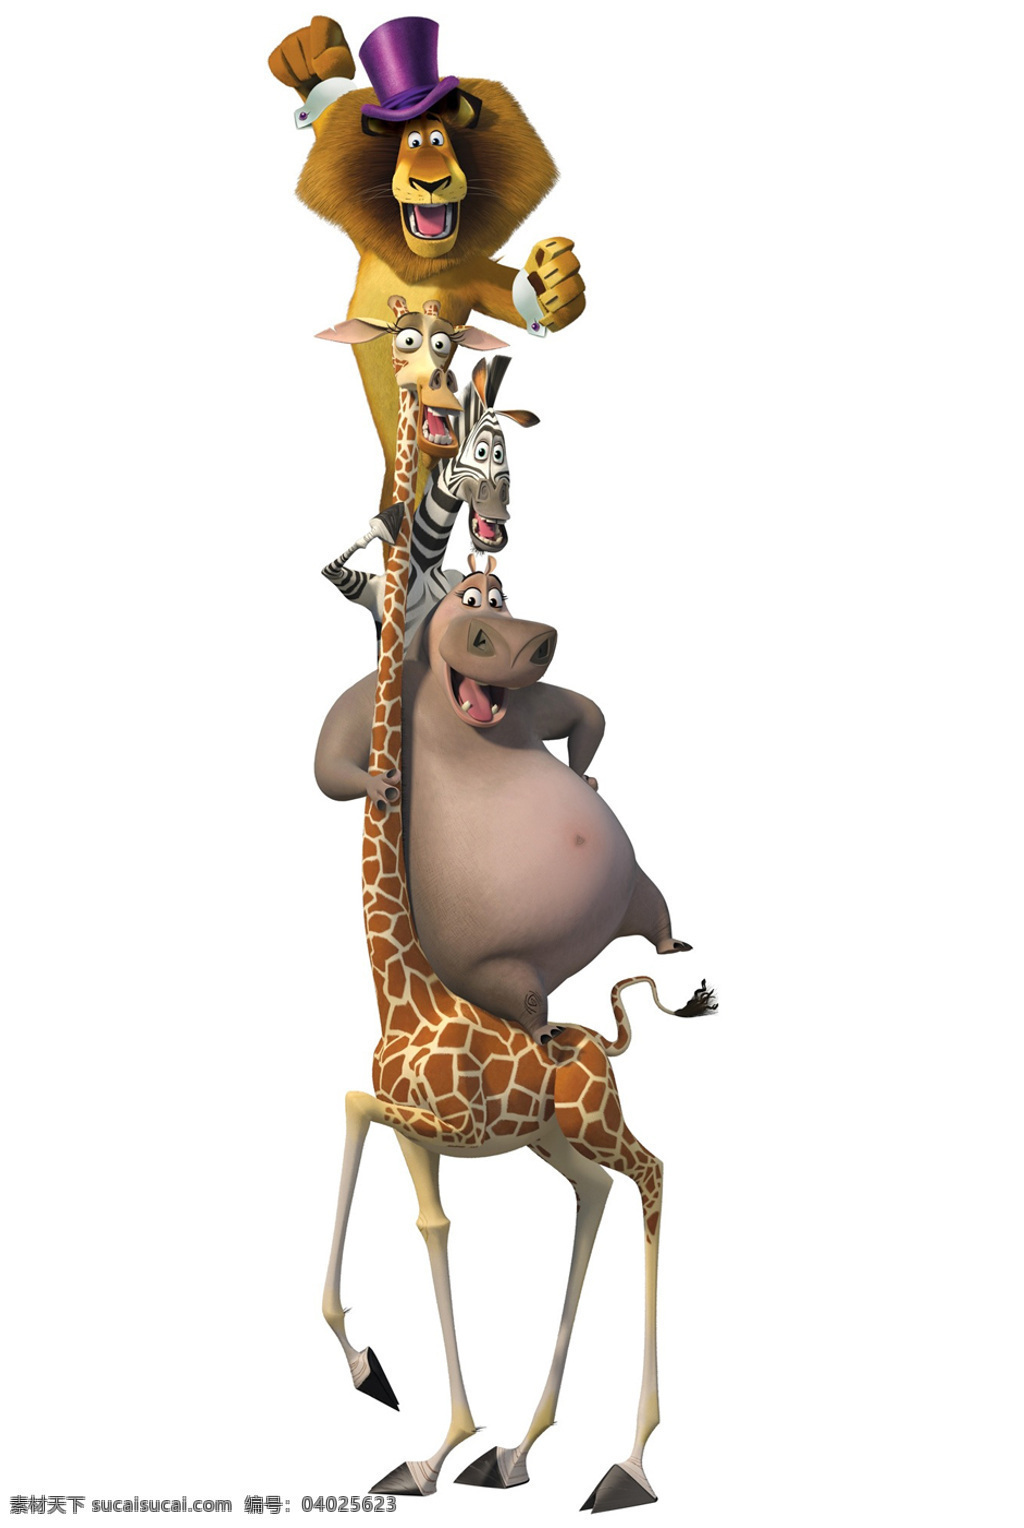 位图免费下载 长颈鹿 动物 服装图案 位图 热门动画 马达加斯加3 面料图库 服装设计 图案花型